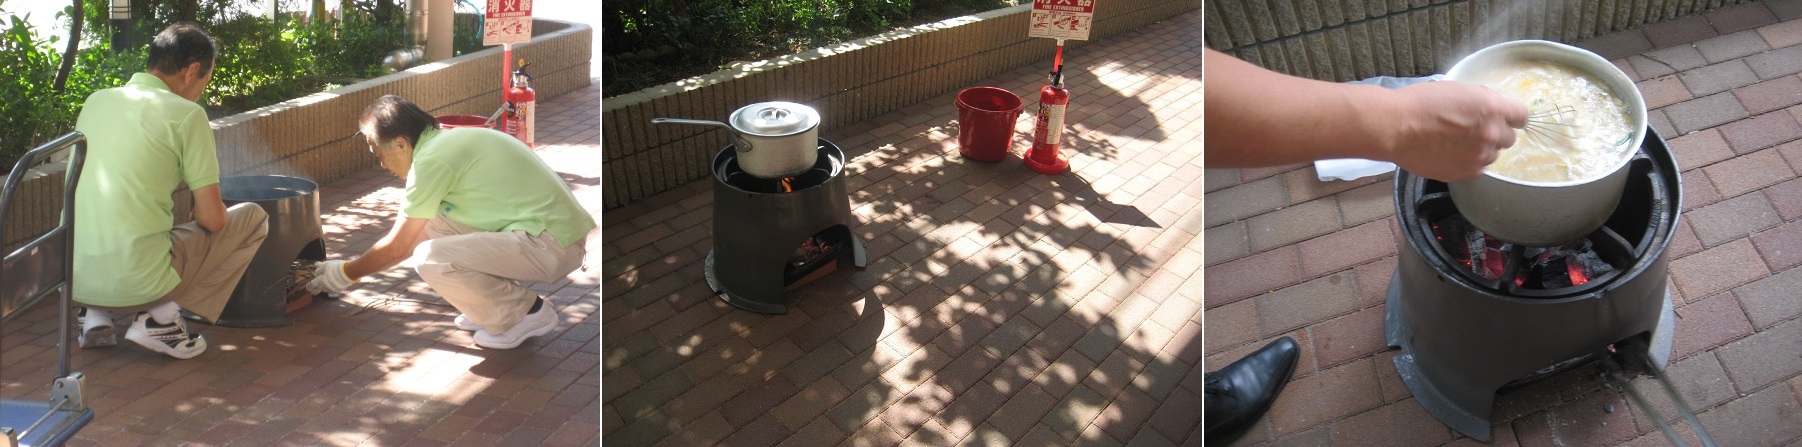 ガス、電気がなくても炊事ができるように釜戸等を装備し、実践訓練を実施